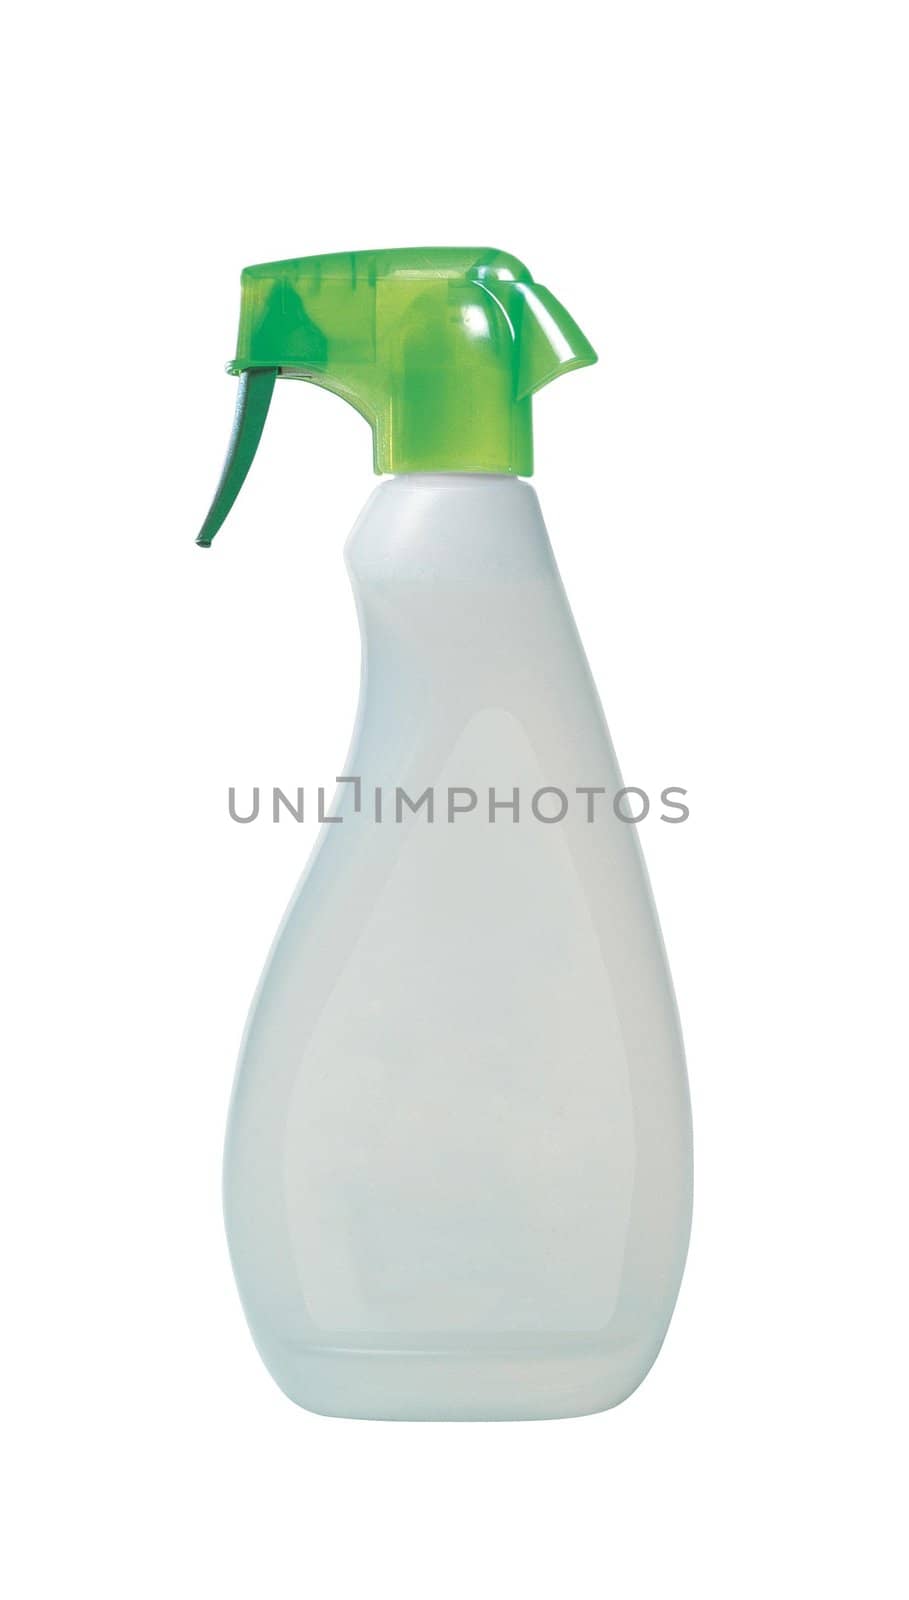 sanitary bottle on white background isolated close up